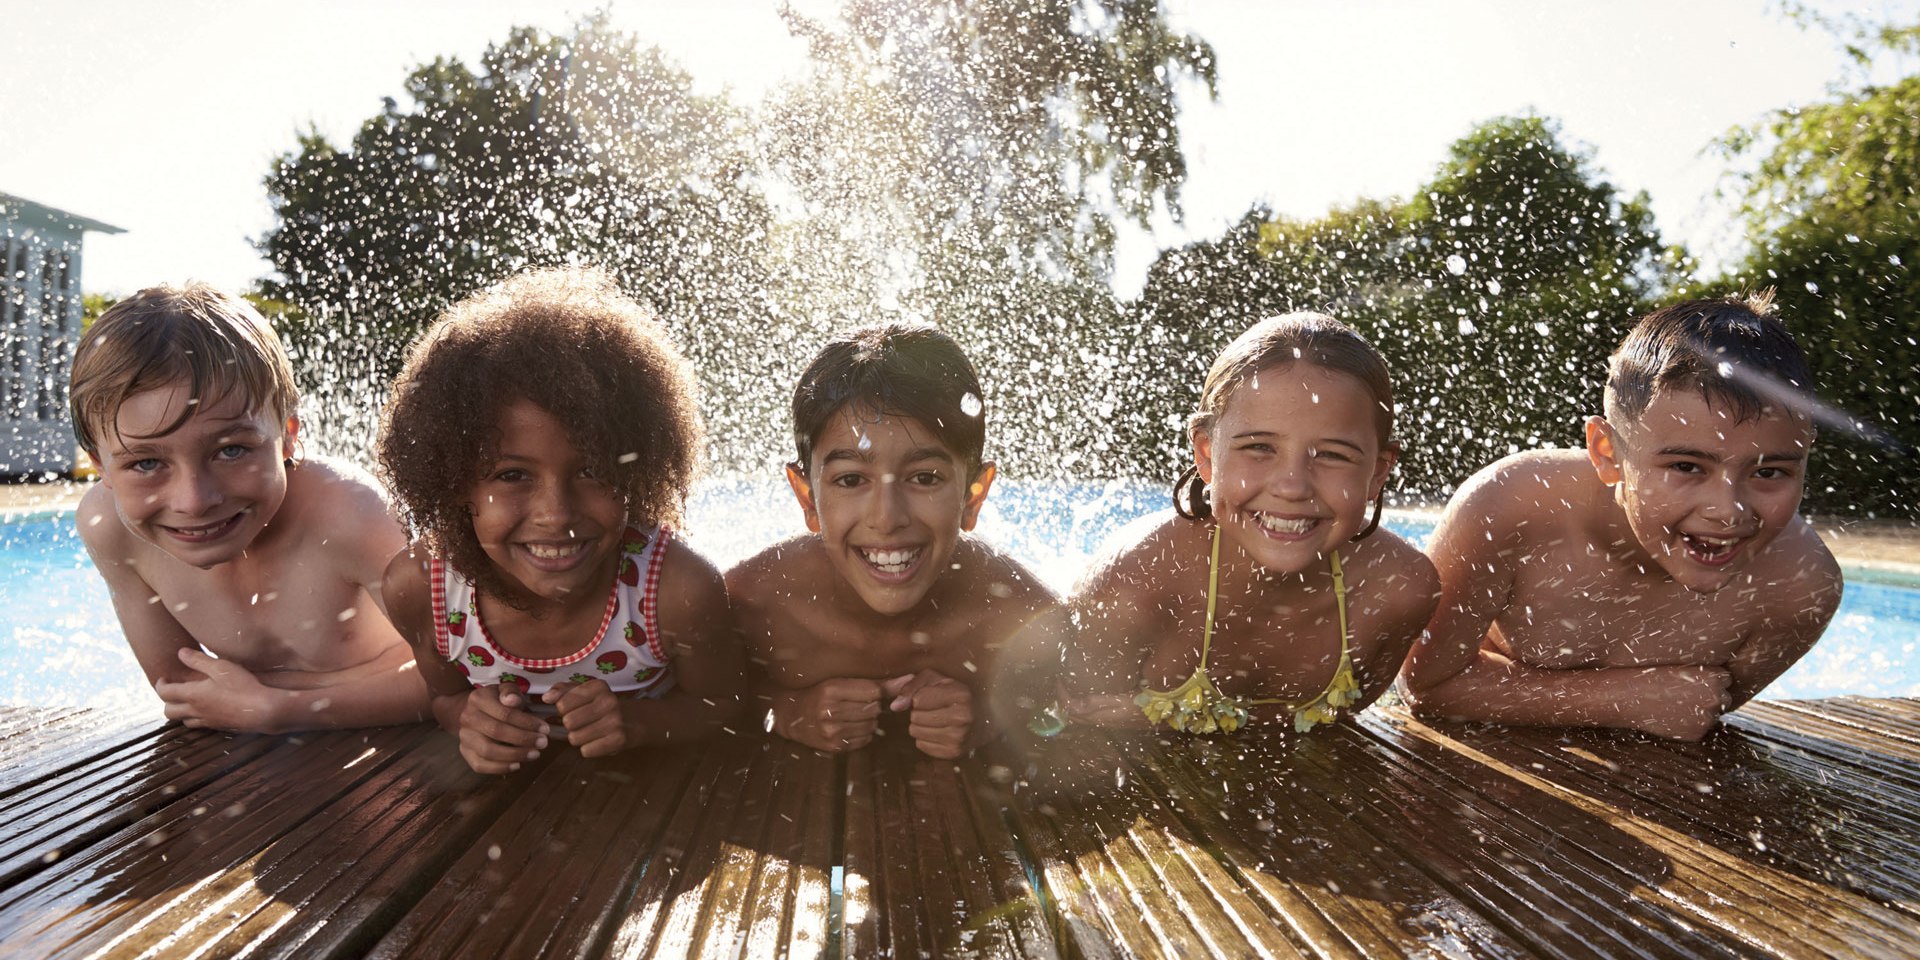 Fünf Kinder planschen am Rand eines Schwimmbeckens., © Stadt Zeven / shutterstock.com